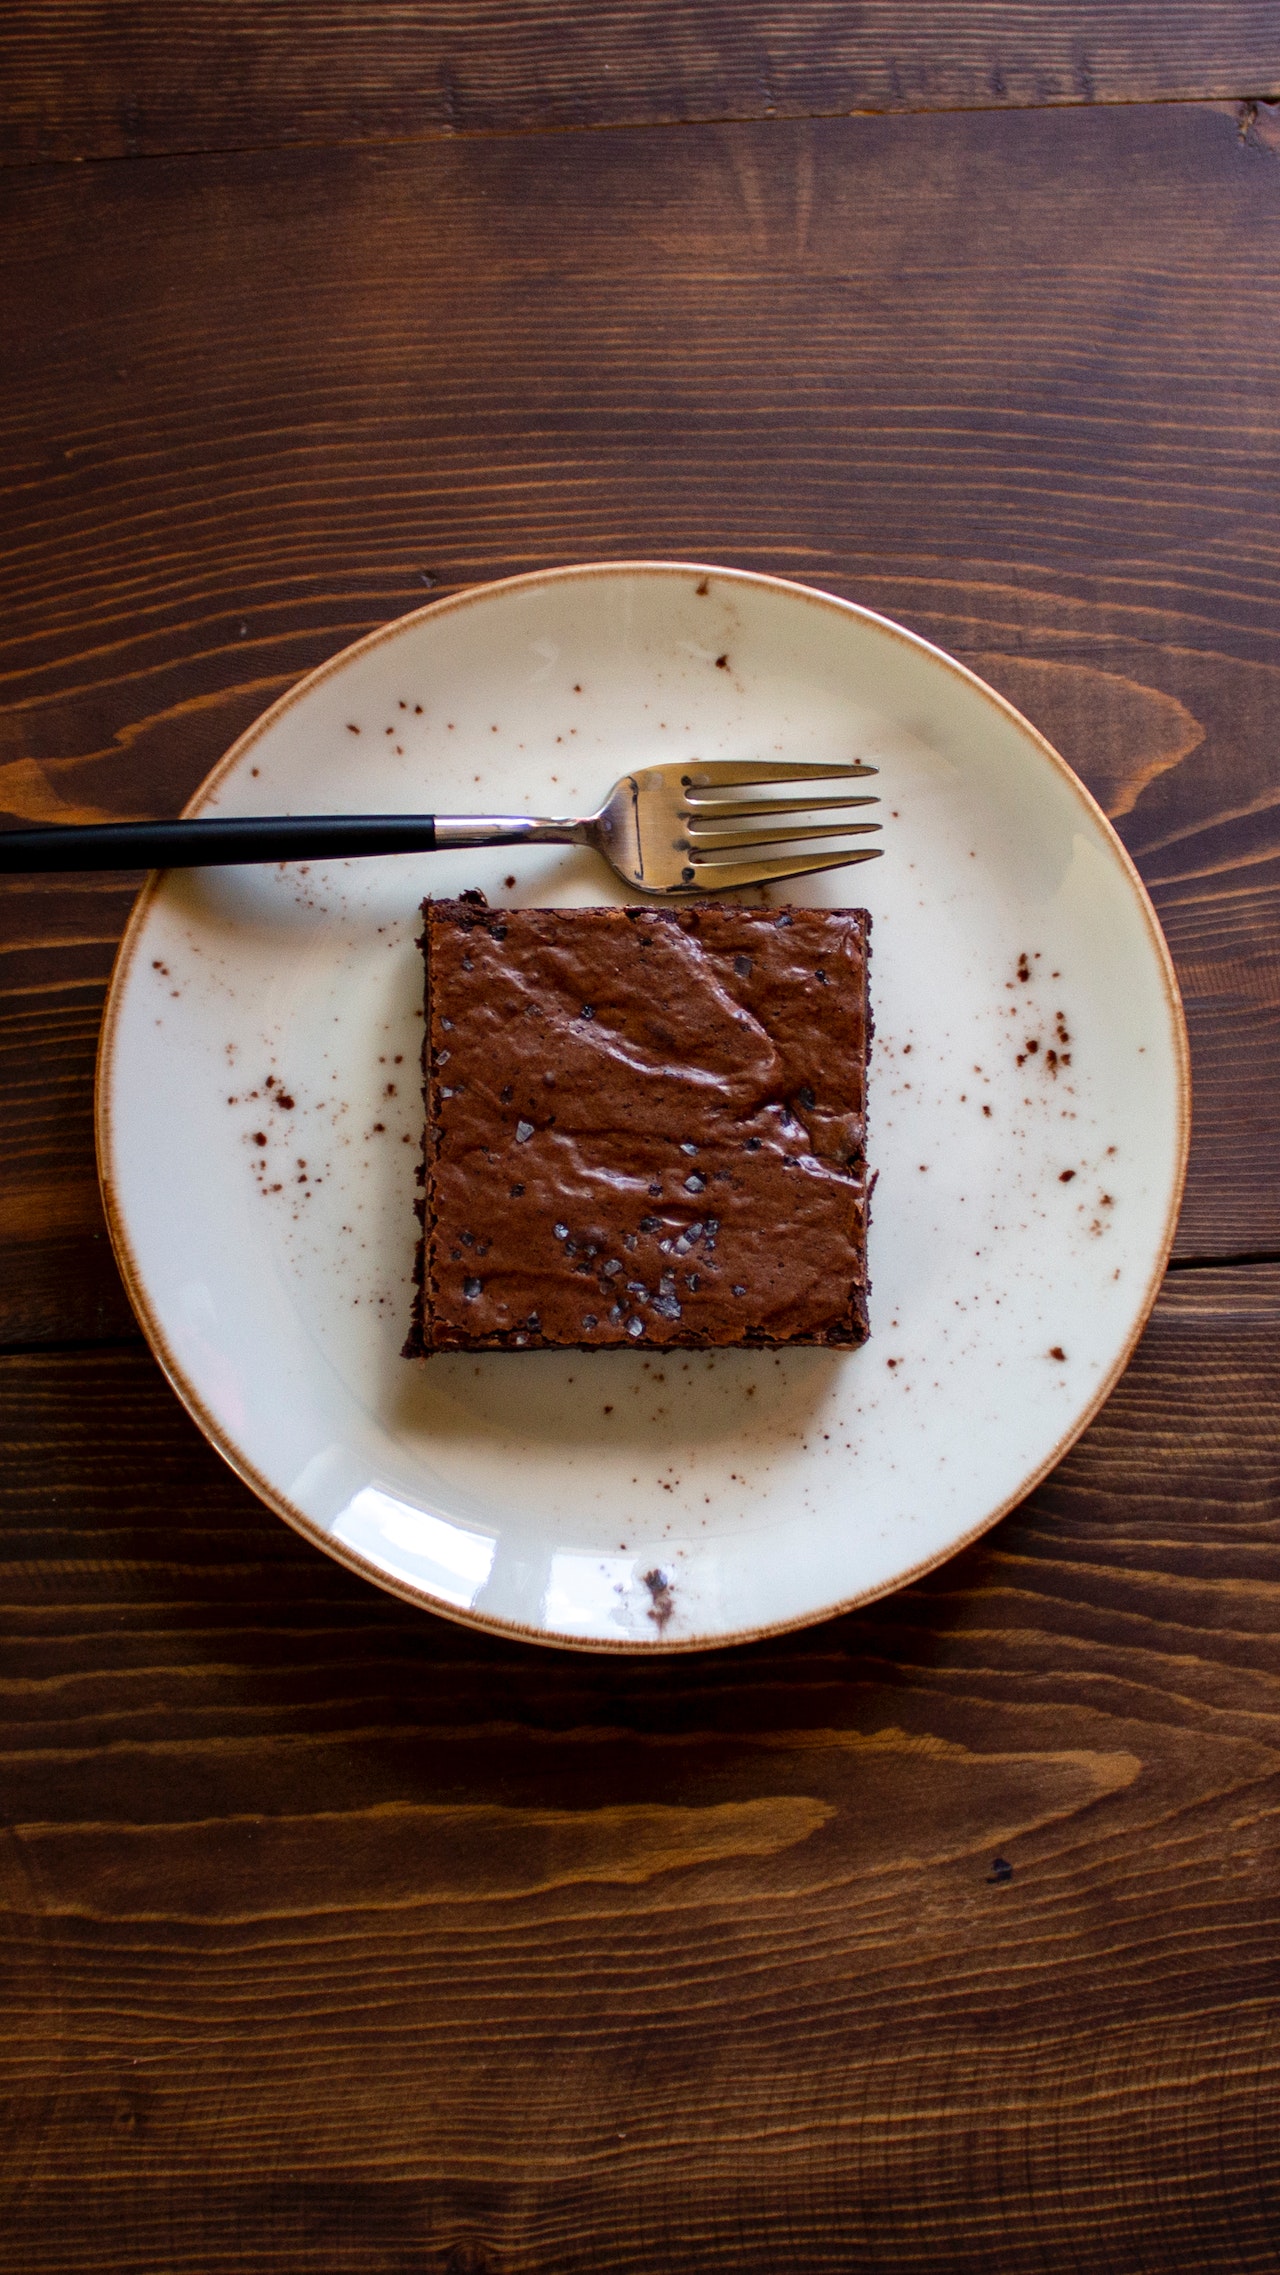 Θέλεις γλυκό; Ετοίμασε σοκολατένιο brownie σε 2' στον φούρνο μικροκυμάτων